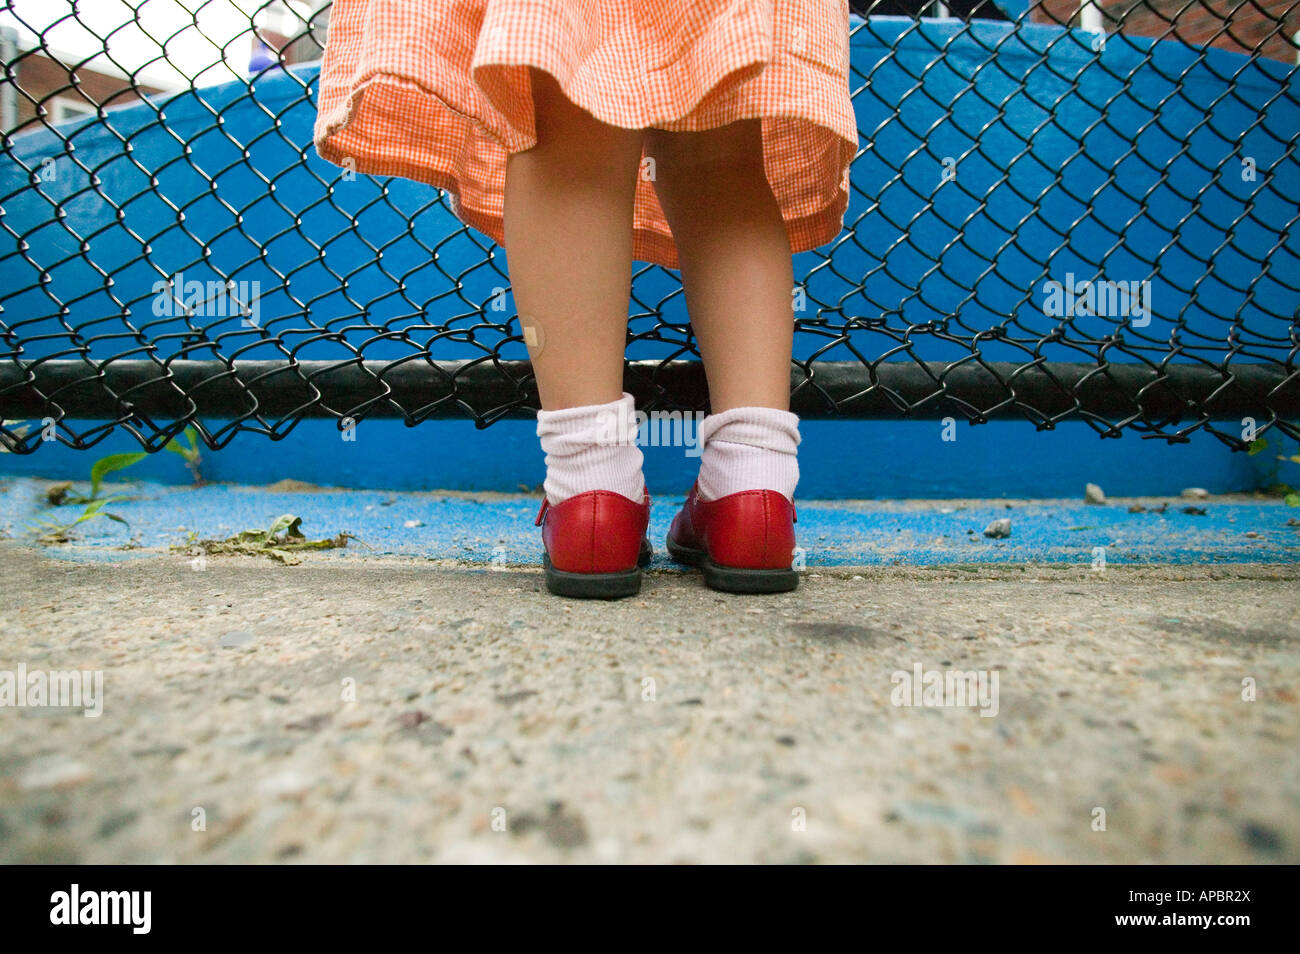 Jolie jambes de jeune fille avec des chaussures rouge et bleu robe à côté de clôture. Low angle bobby chaussettes Banque D'Images